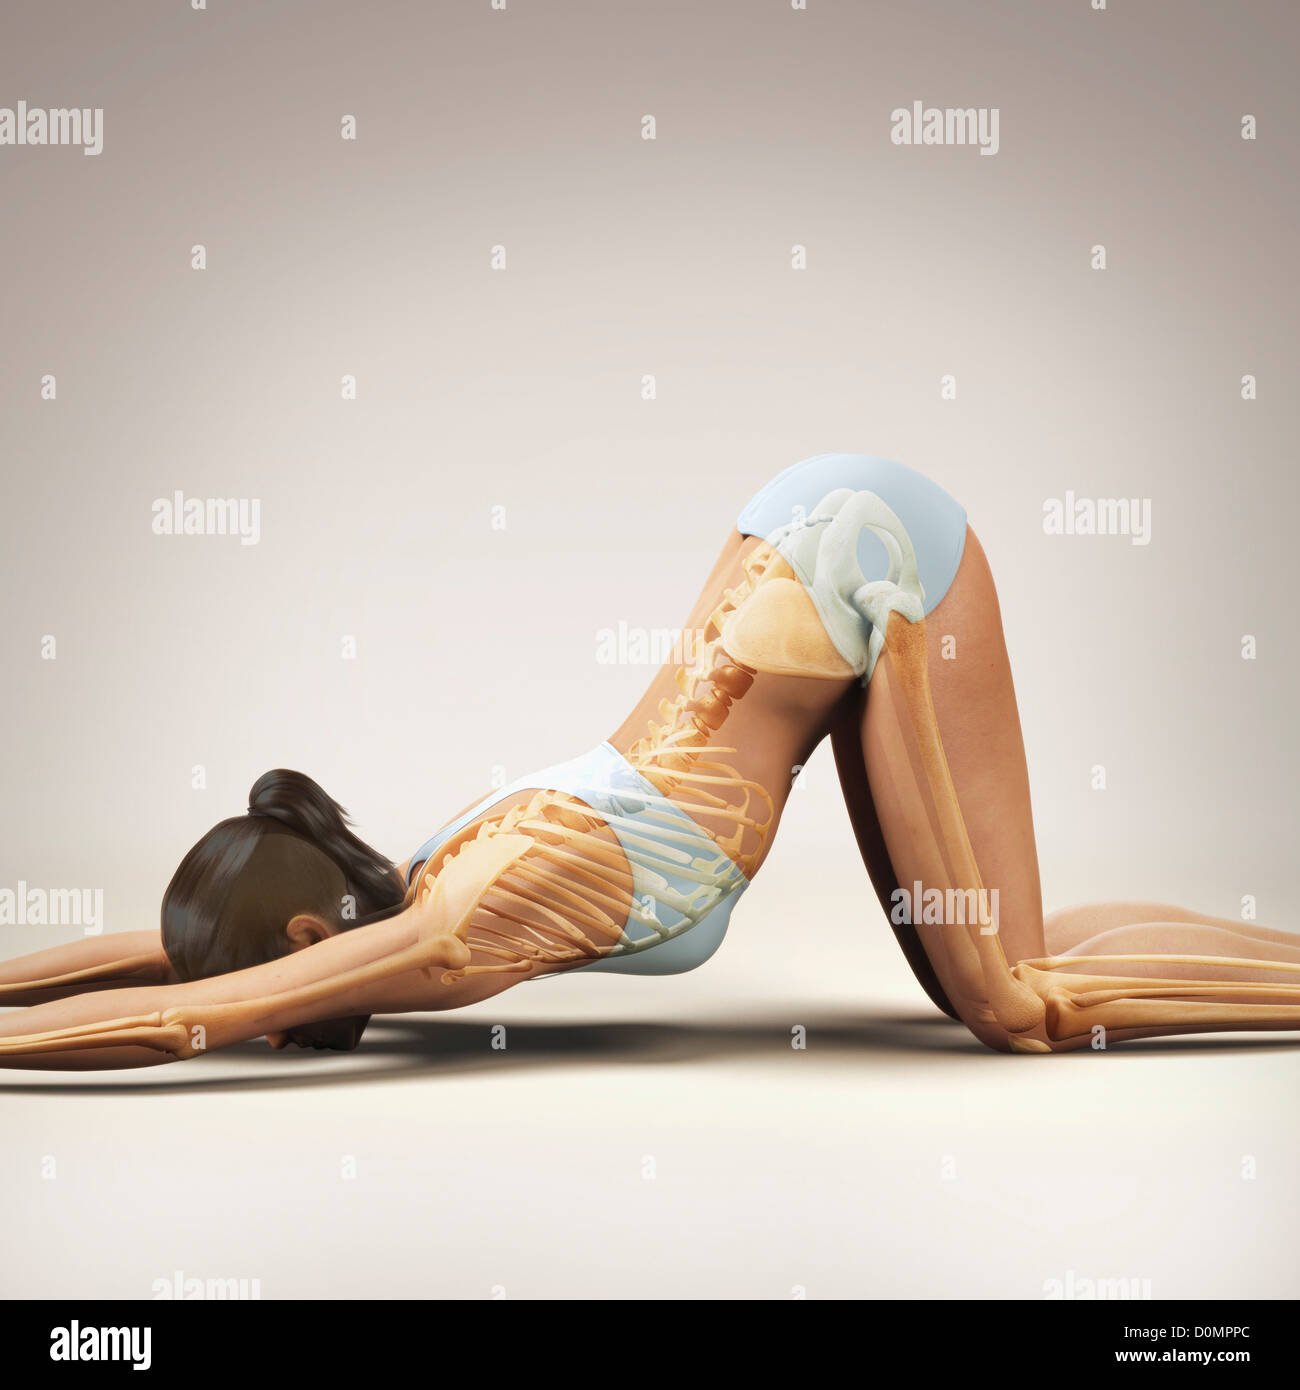 Skelett über einen weiblichen Körper in erweiterten Welpen Pose zeigt die Skelette Ausrichtung von diesem bestimmten Yogastellung geschichtet. Stockfoto